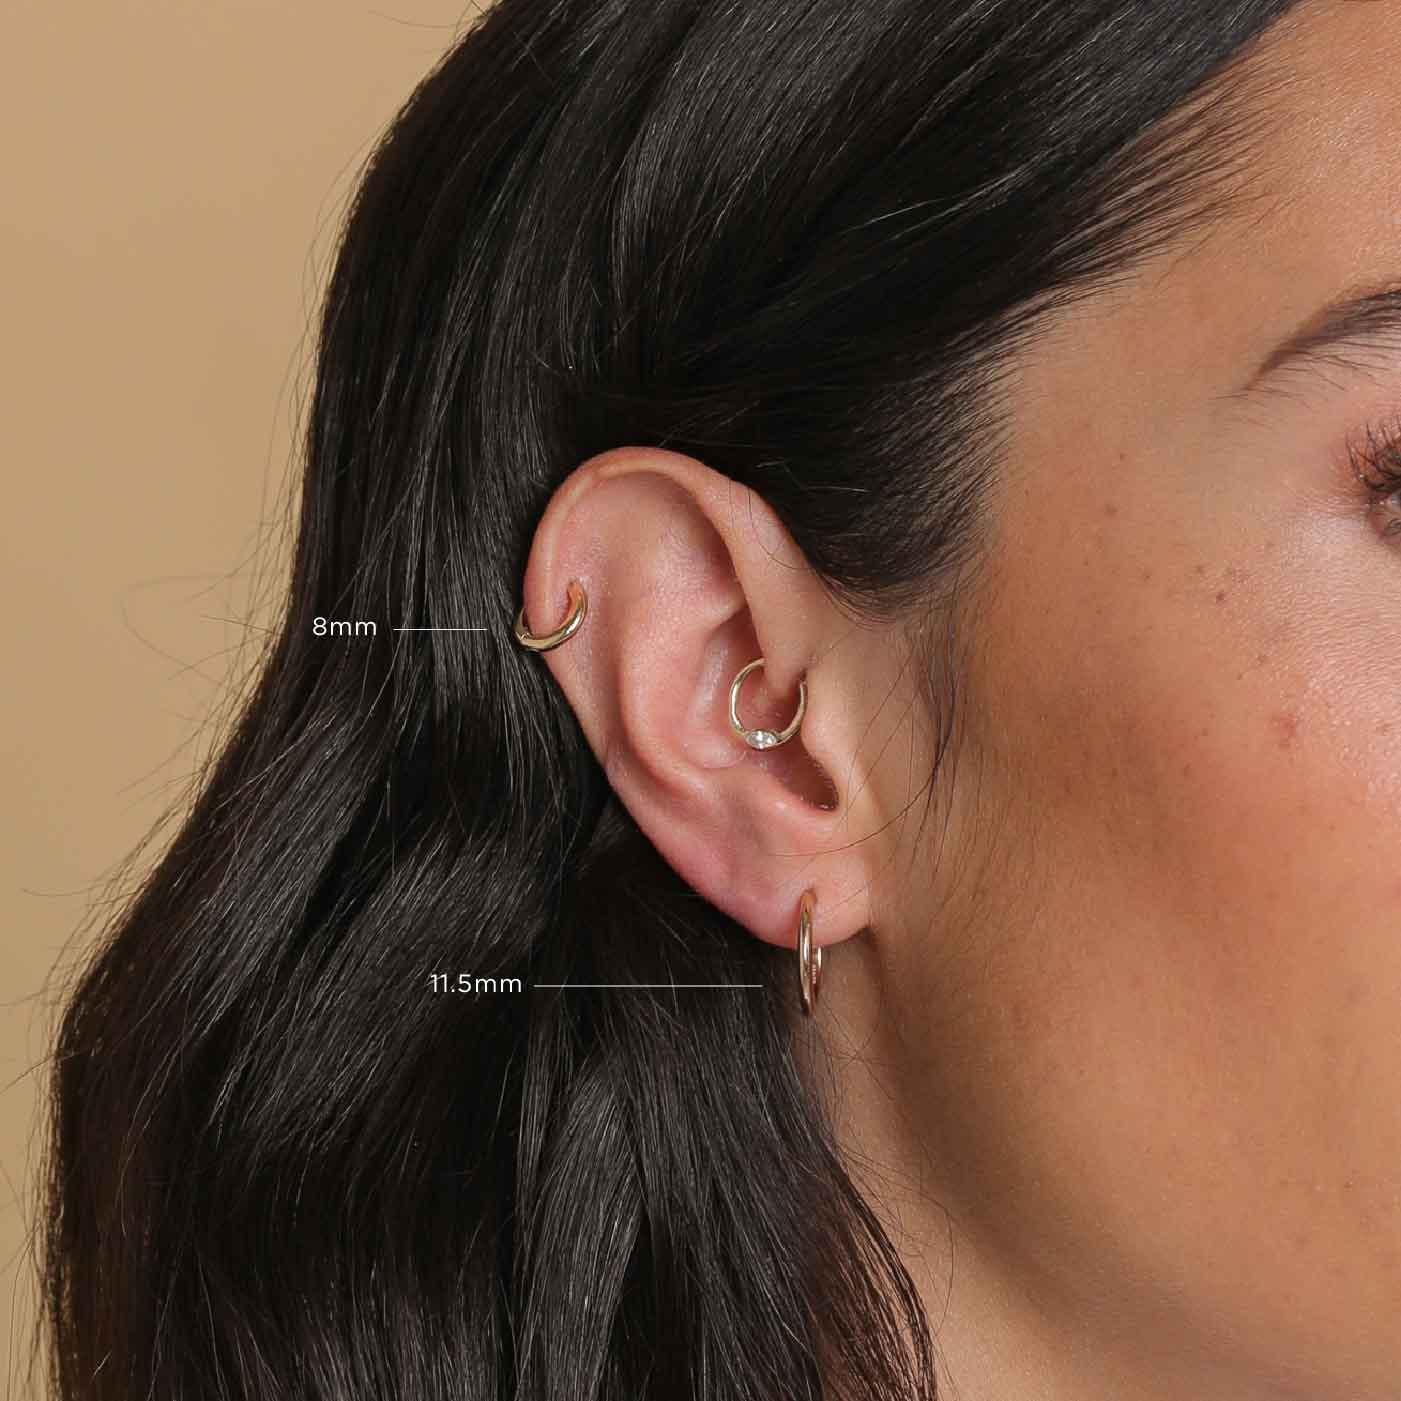 Buy The Essential Hoop Chunky Gold Hoop Earrings Minimalist Online in India   Etsy